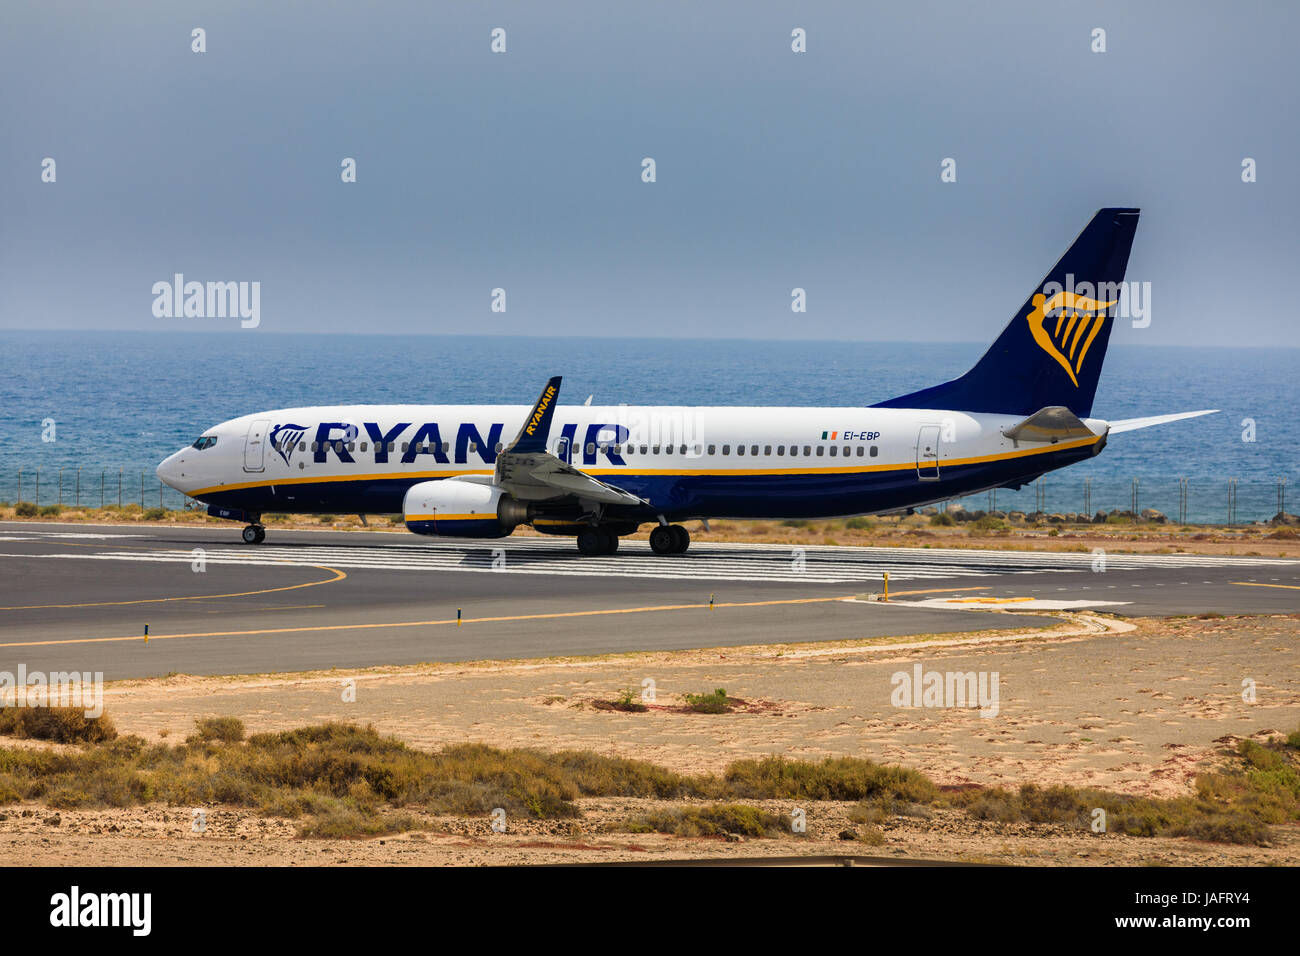 ARECIFE, Spanien - 16. April 2017: Boeing 737-800 der AYANAIR mit der Registrierung IE-EBP bereit abzunehmen am Flughafen Lanzarote Stockfoto